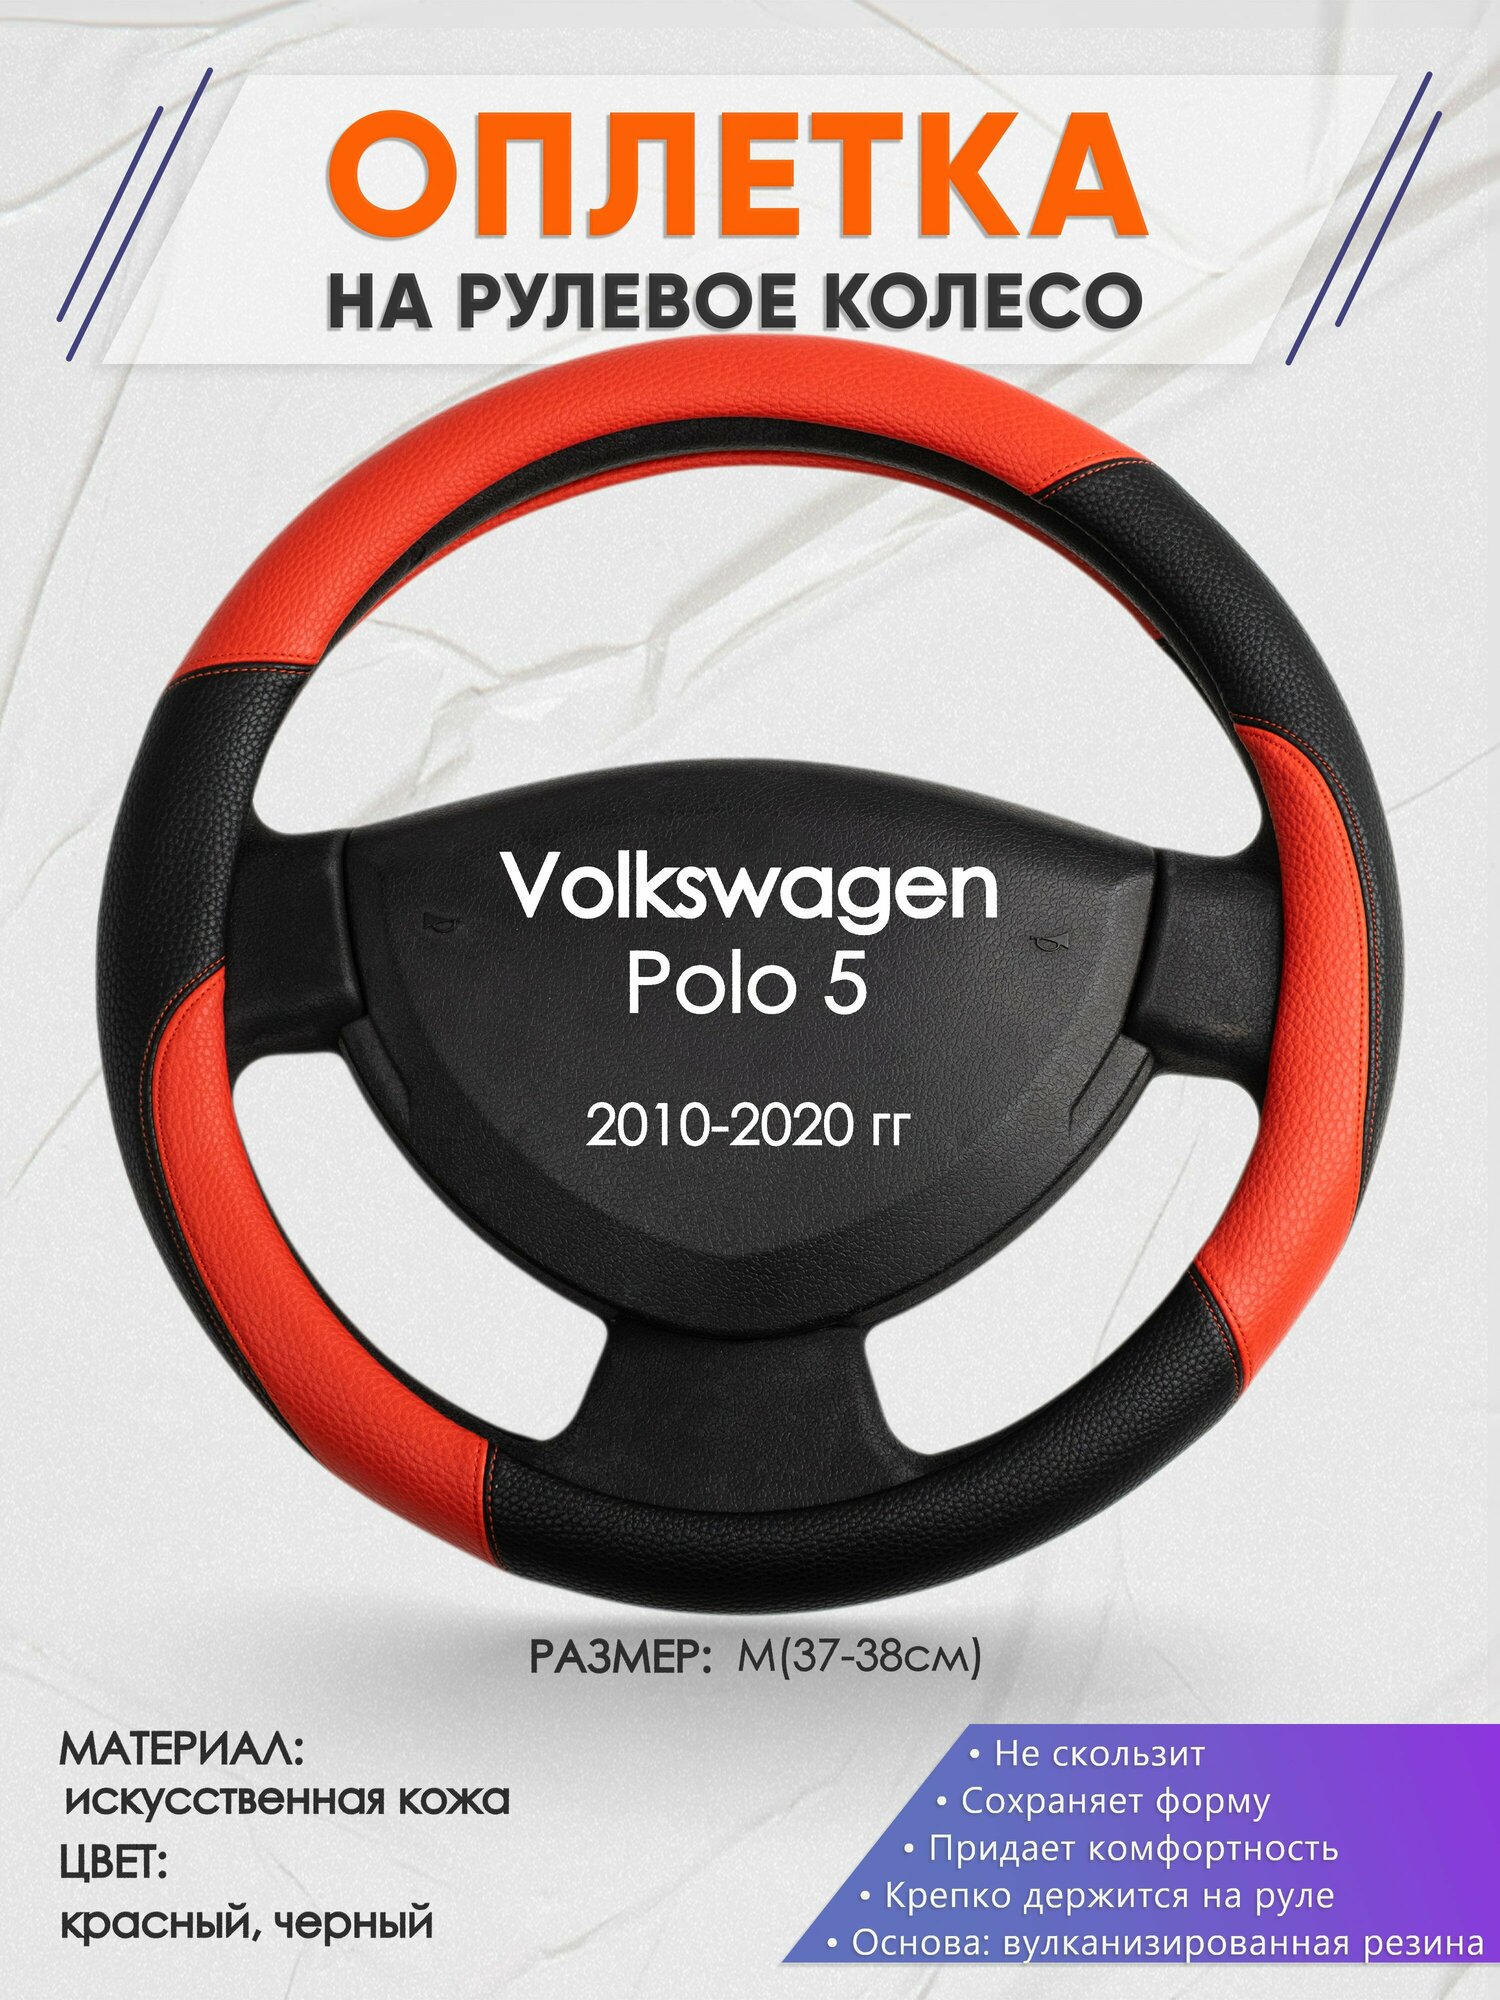 Оплетка на руль для Volkswagen Polo 5(Фольксваген Поло 5) 2010-2020, M(37-38см), Искусственная кожа 63